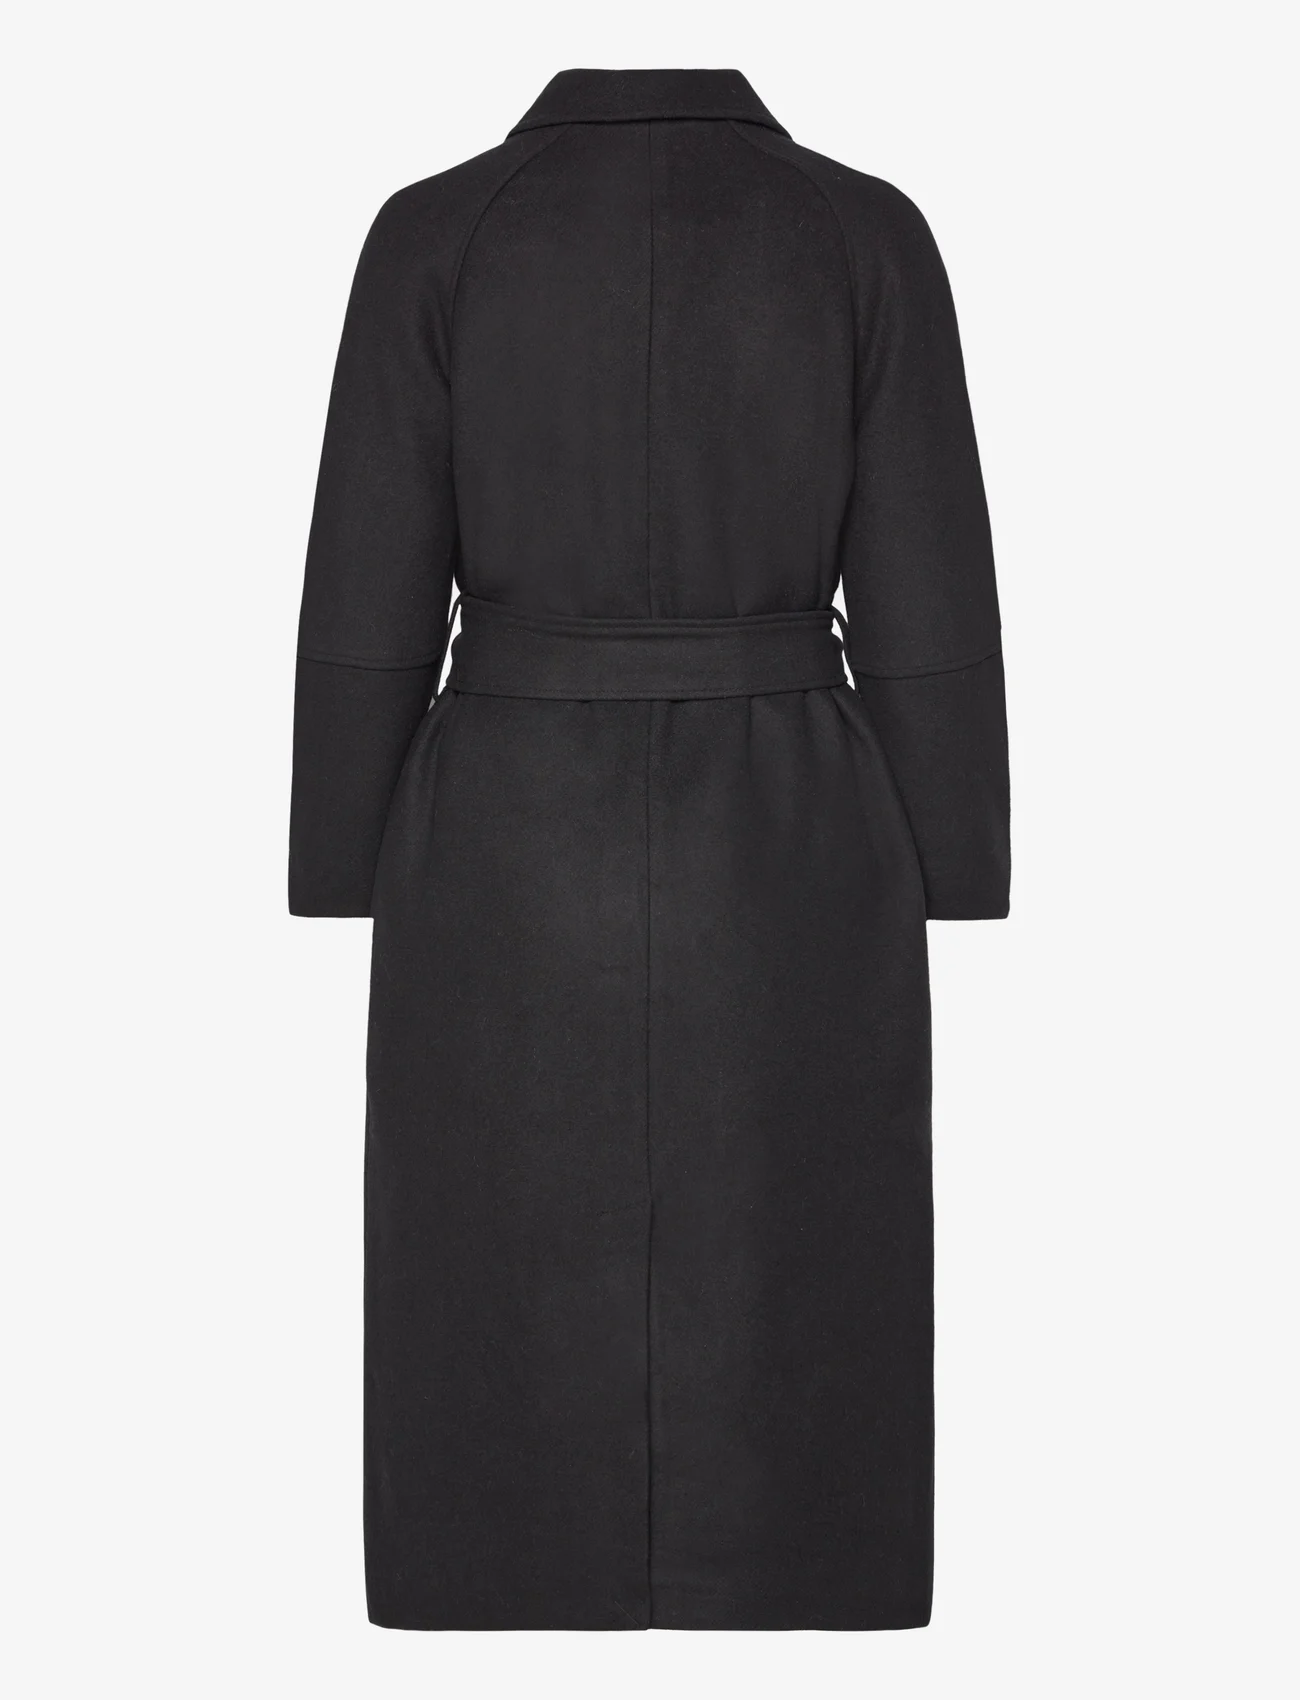 Rosemunde - Wool coat - winter coats - black - 1